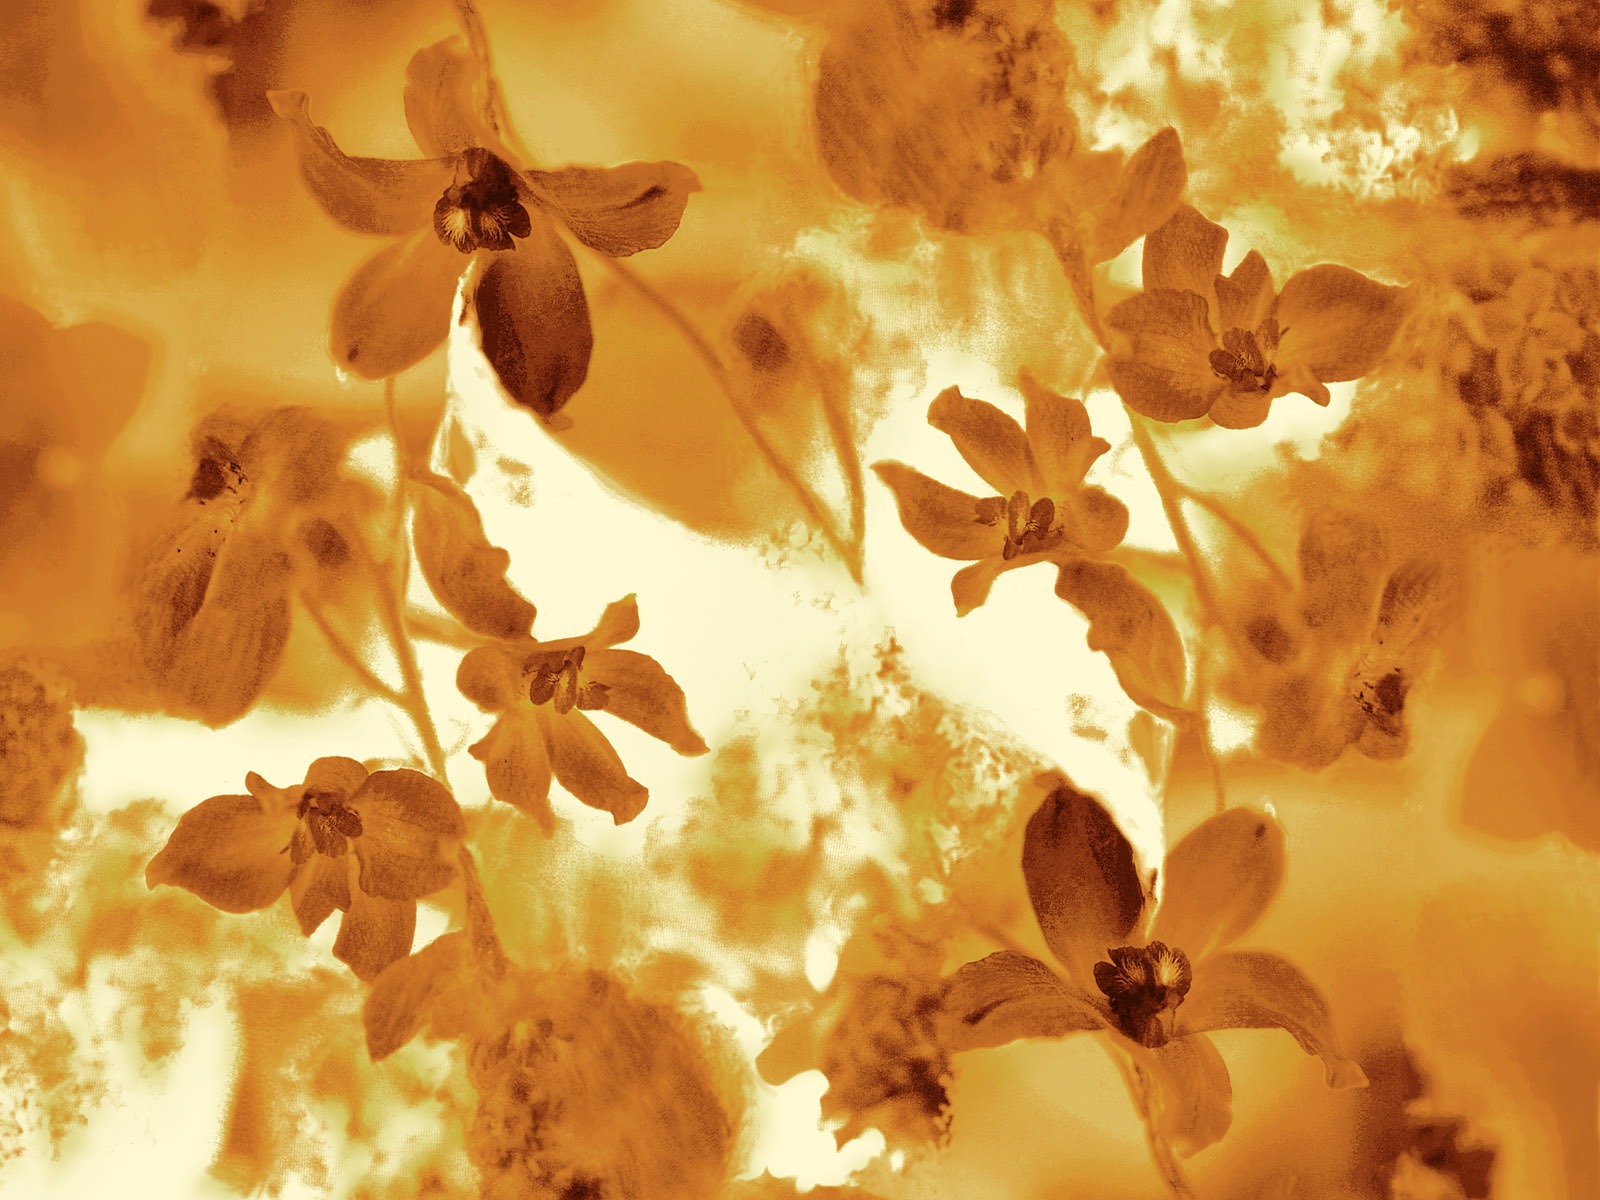 Fondos de pantalla de tinta exquisita flor #15 - 1600x1200